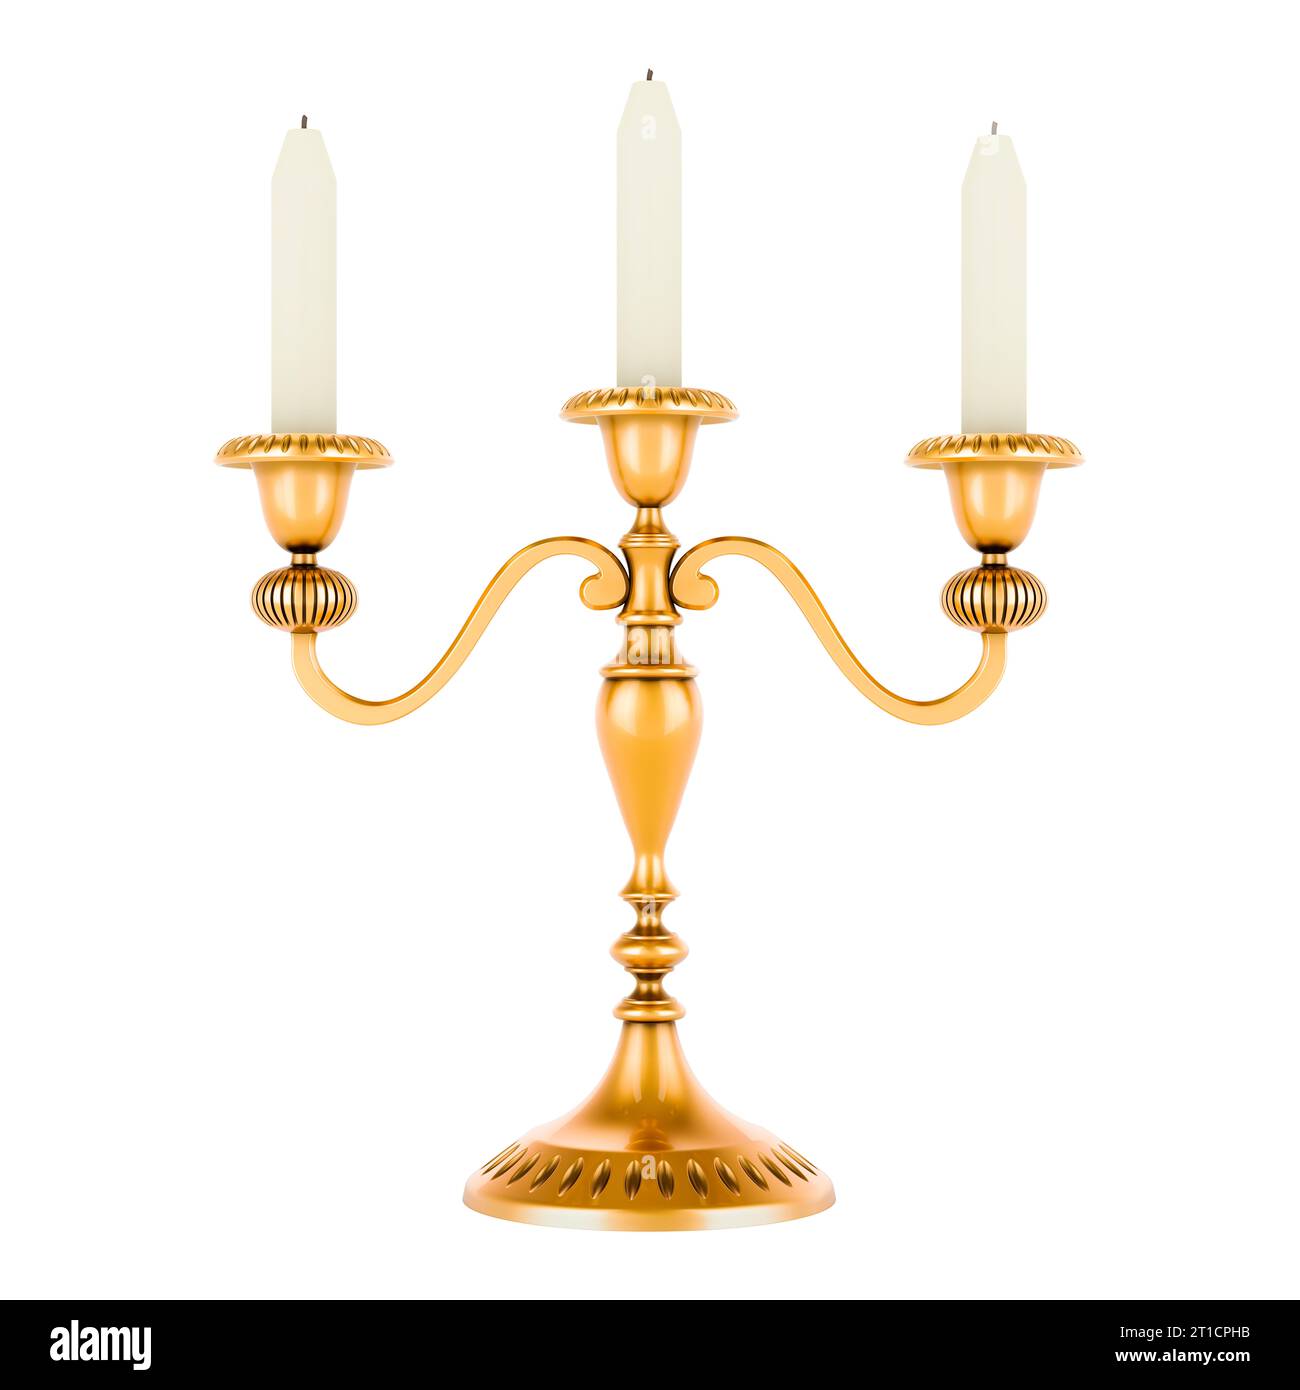 Portacandele in ottone, Candelabro dorato con candele. Rendering 3D isolato su sfondo bianco Foto Stock